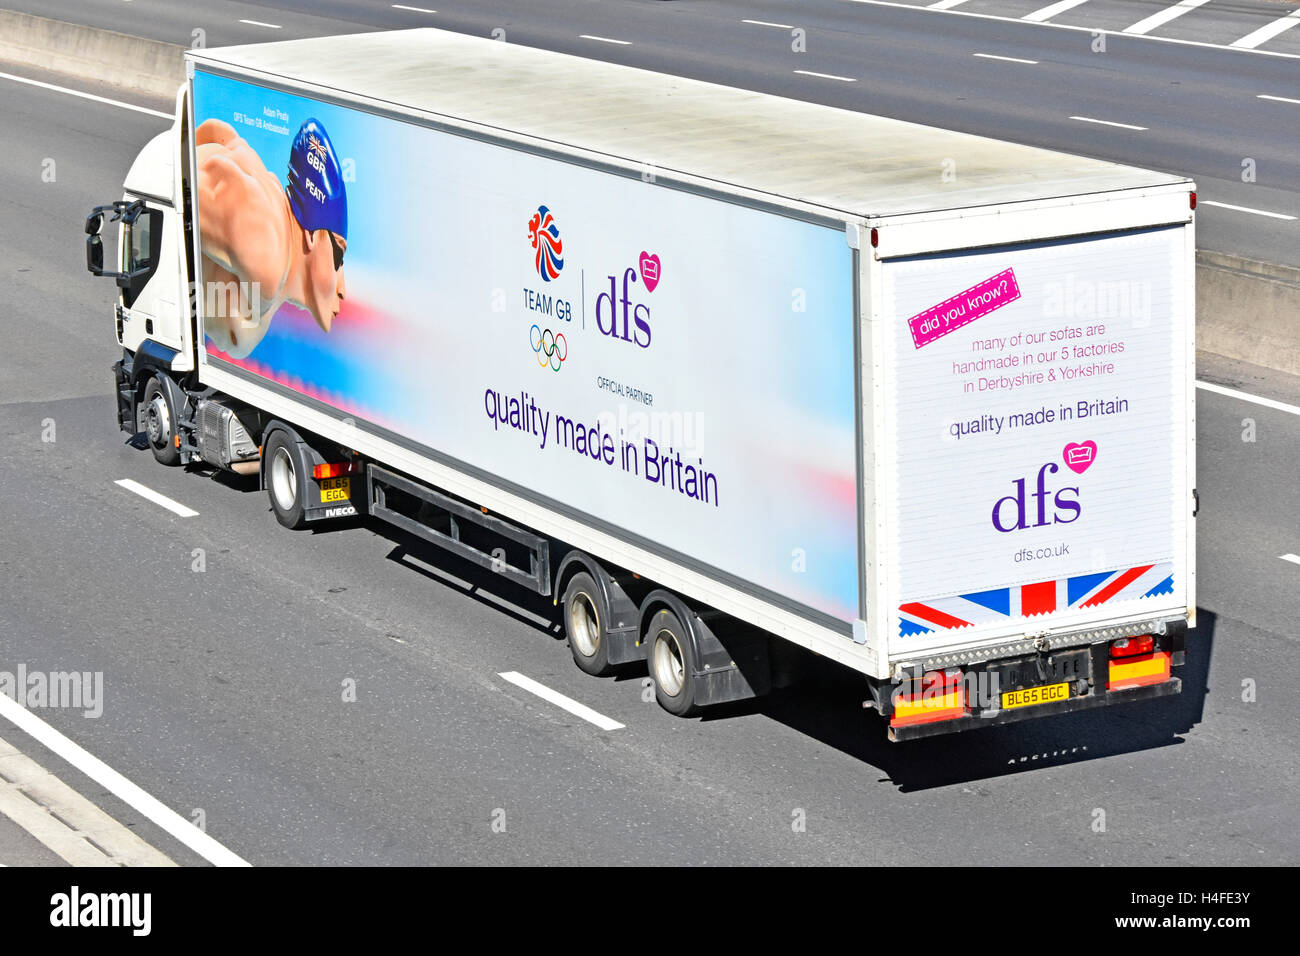 dfs supply chain hgv camion articolato rimorchio pubblicità divano mobili prodotti business & sponsorizzazione sportiva guida su autostrada M25 UK Foto Stock